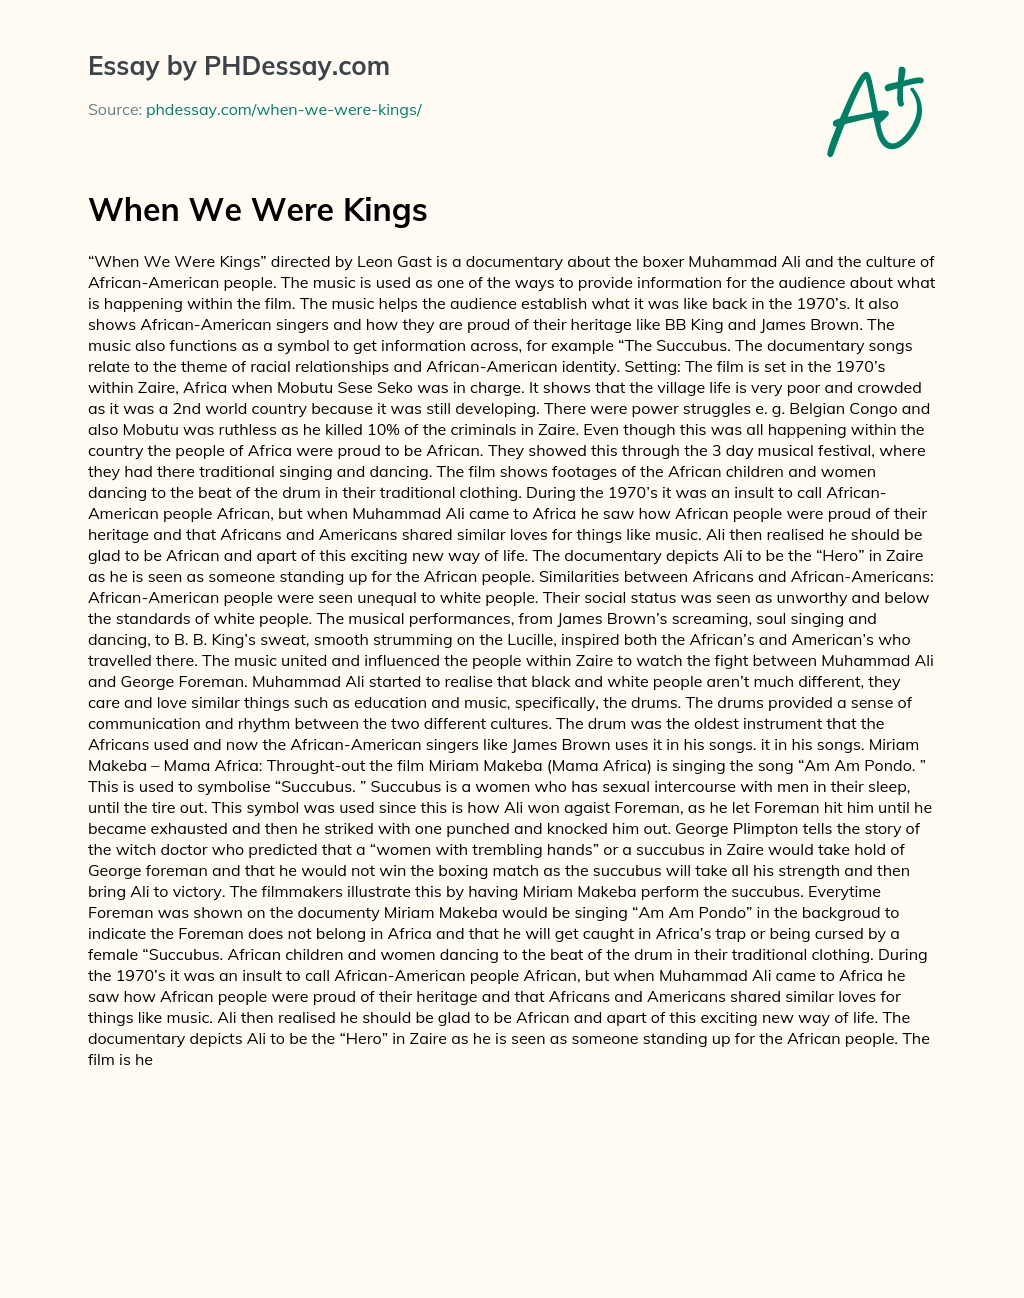 When We Were Kings essay